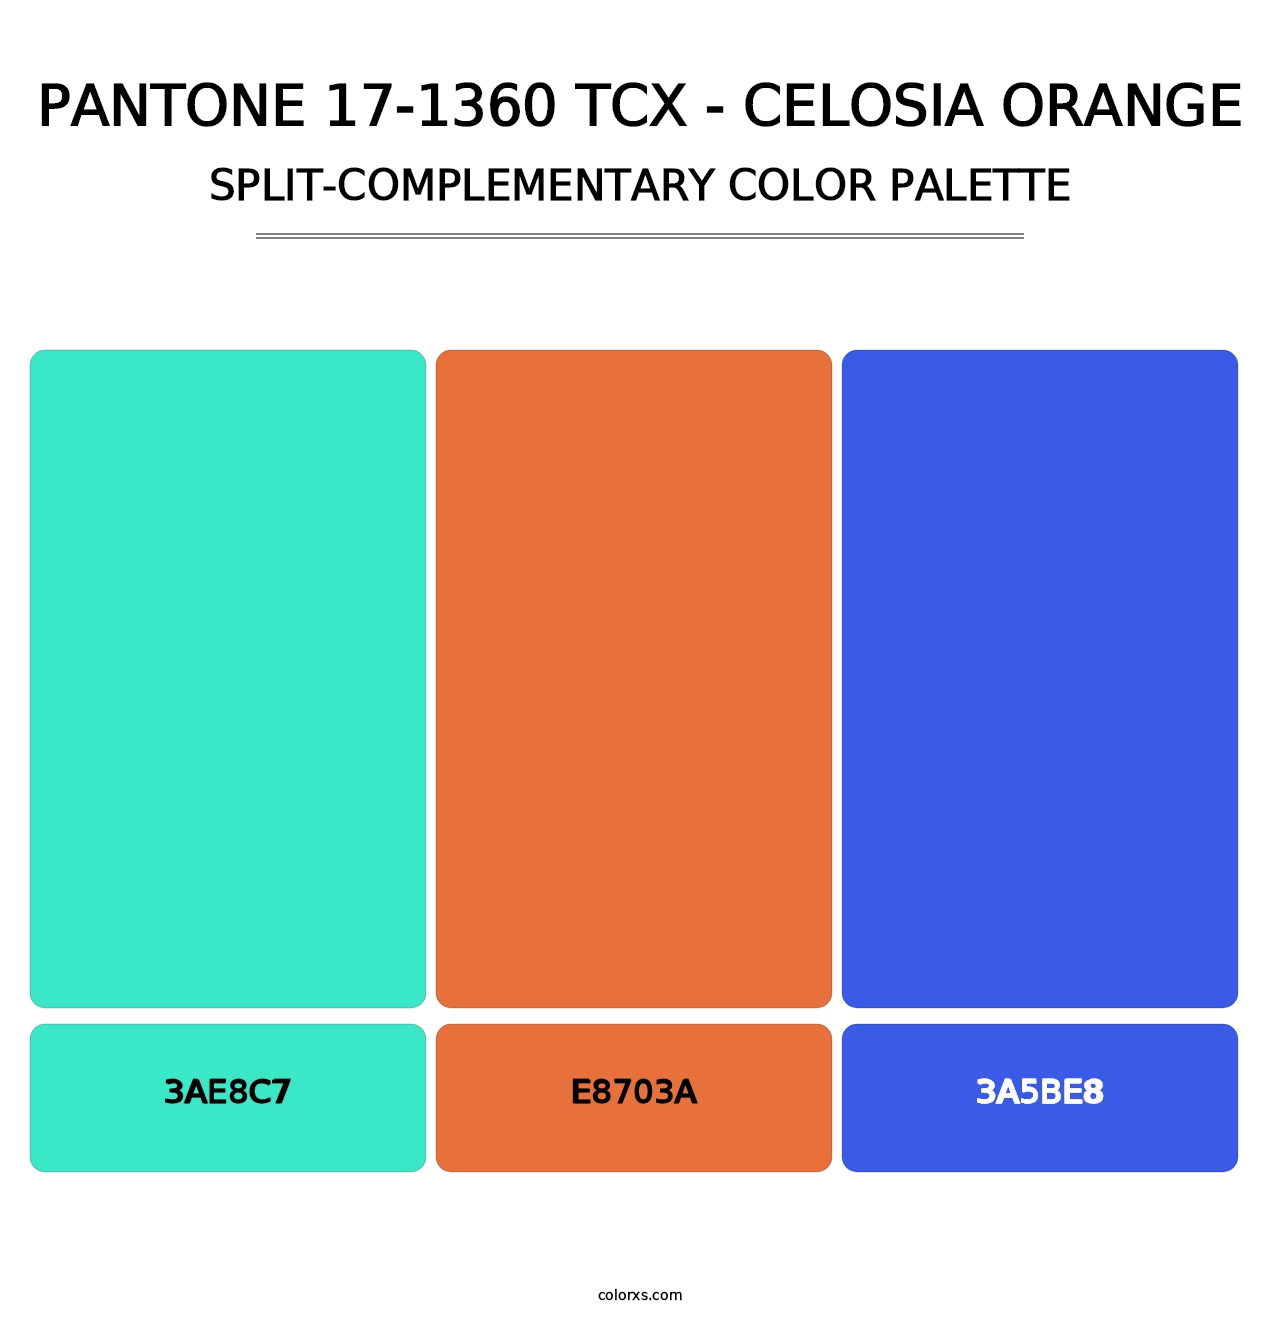 PANTONE 17-1360 TCX - Celosia Orange - Split-Complementary Color Palette